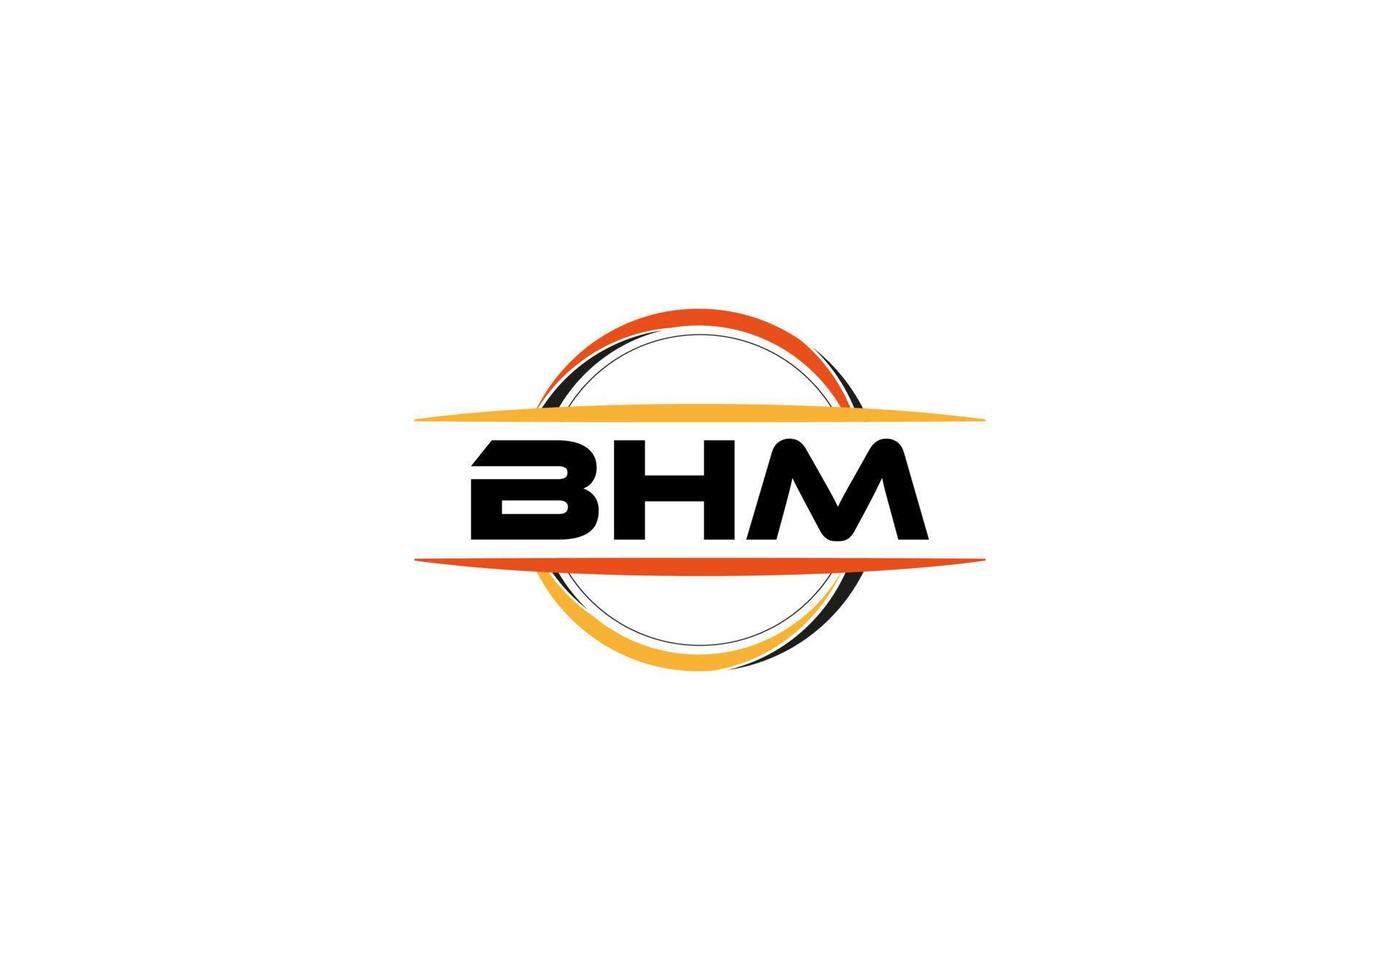 bhm lettera reali ellisse forma logo. bhm spazzola arte logo. bhm logo per un' azienda, attività commerciale, e commerciale uso. vettore